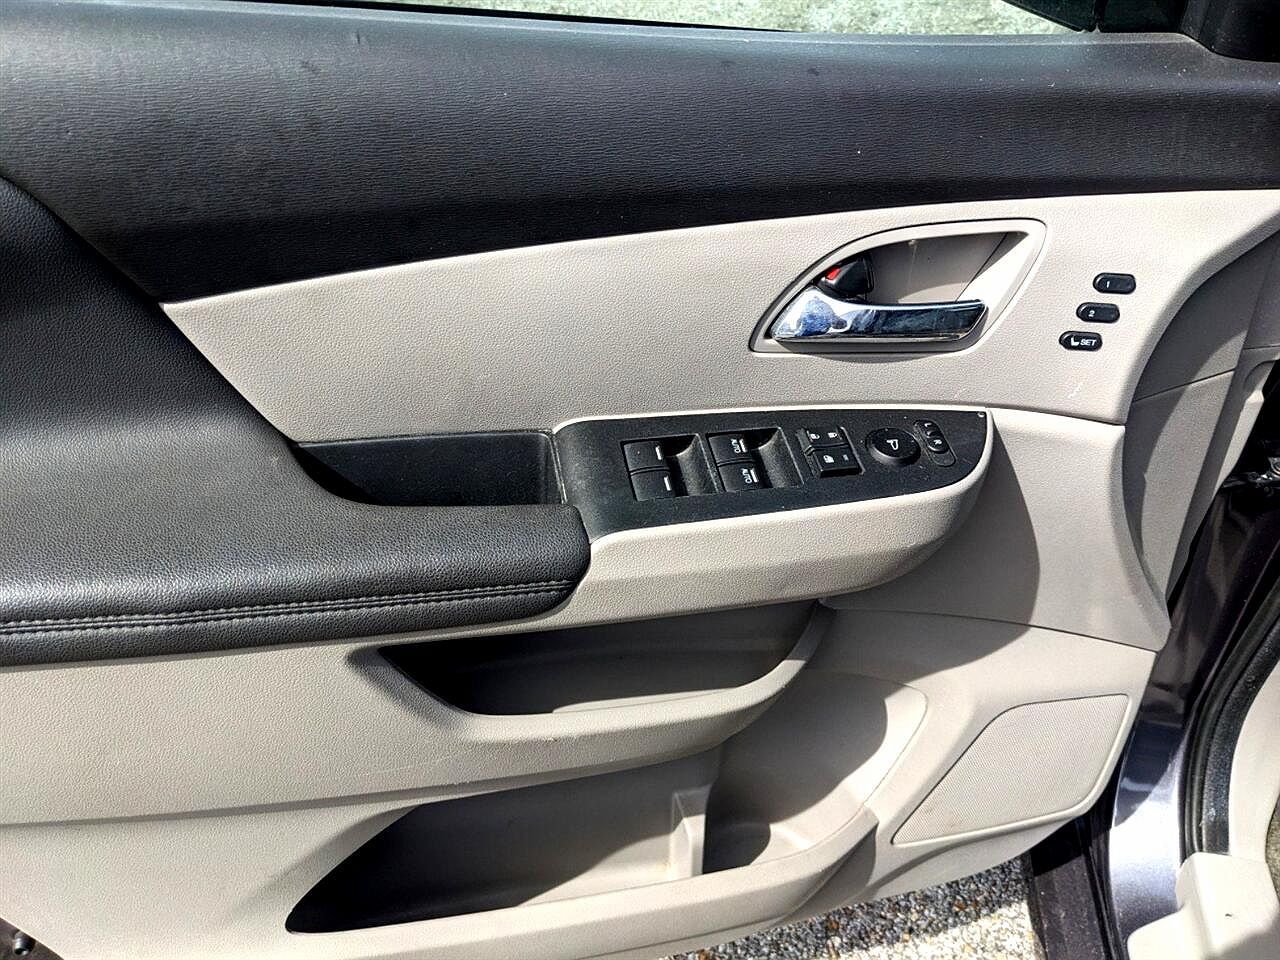 2015 Honda Odyssey Touring image 12